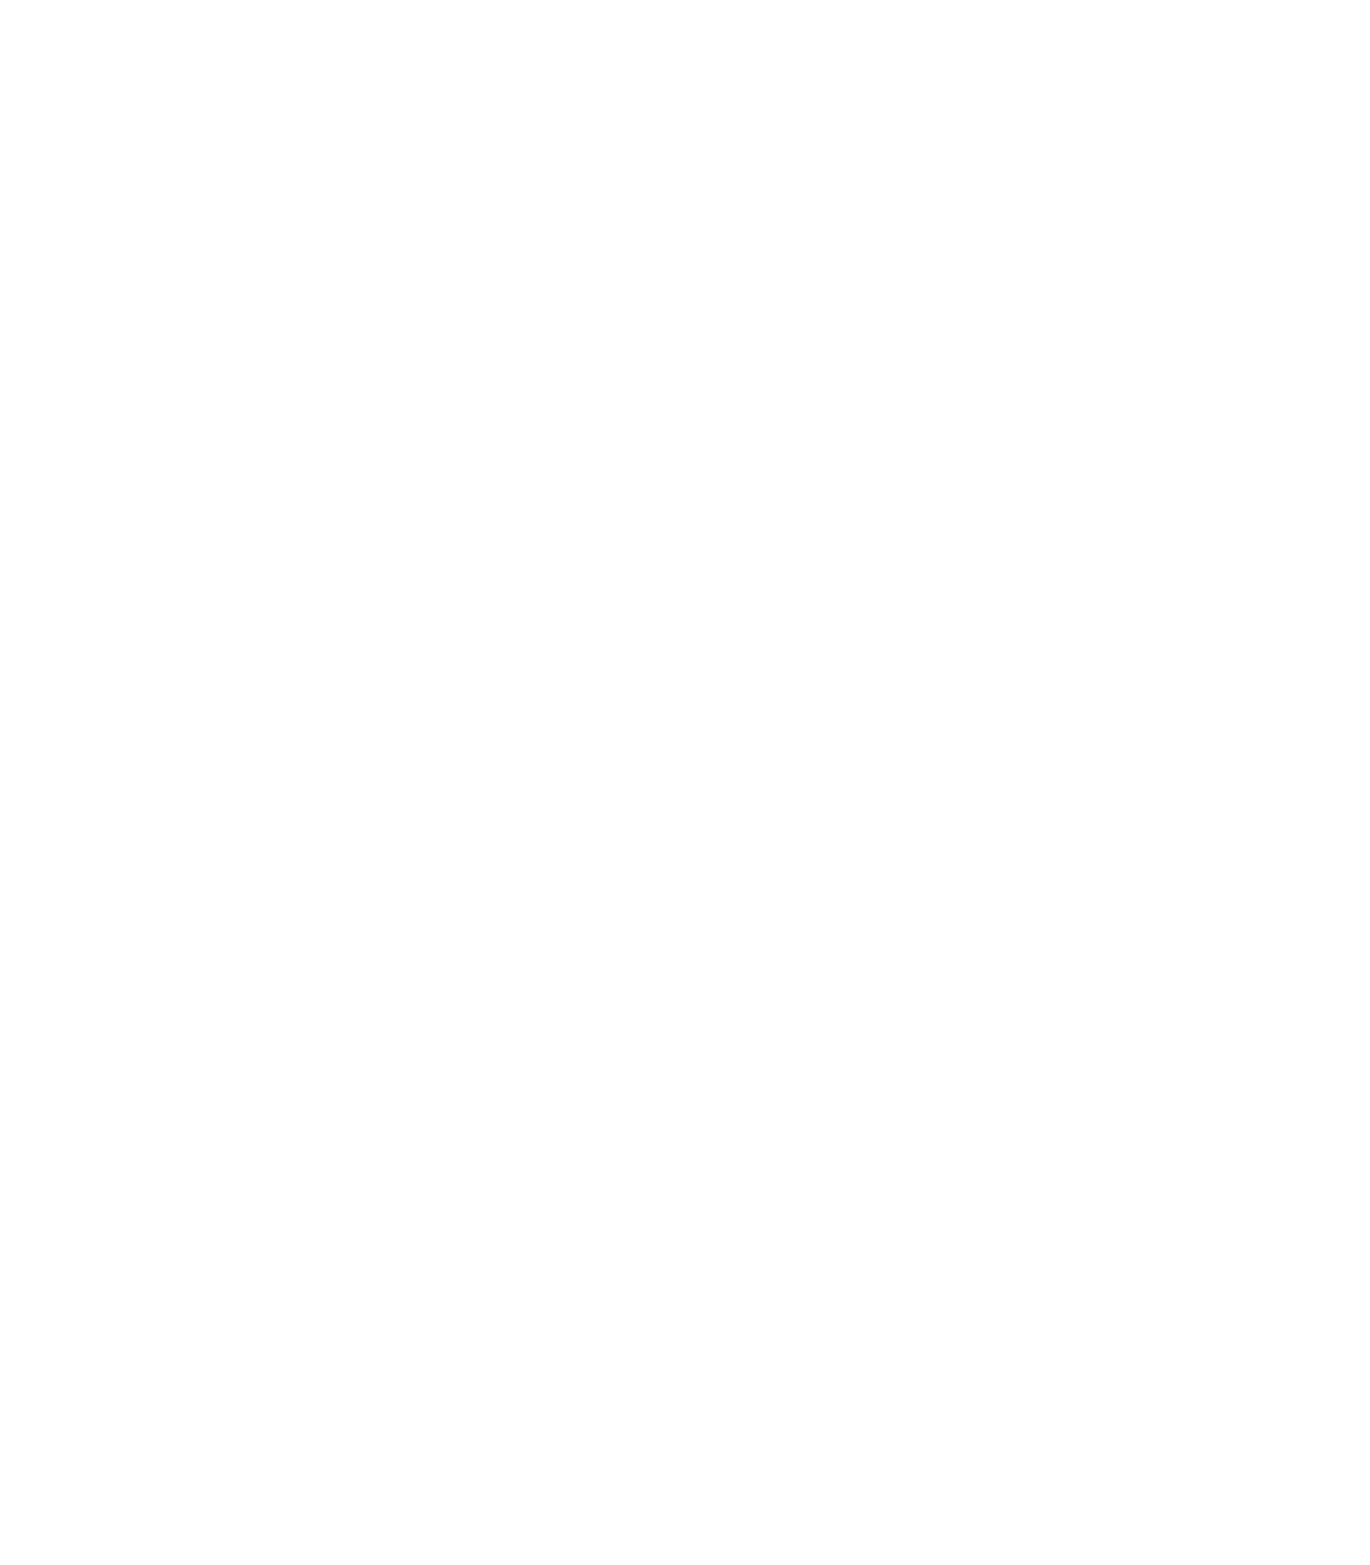 Archosaur Games logo for dark backgrounds (transparent PNG)